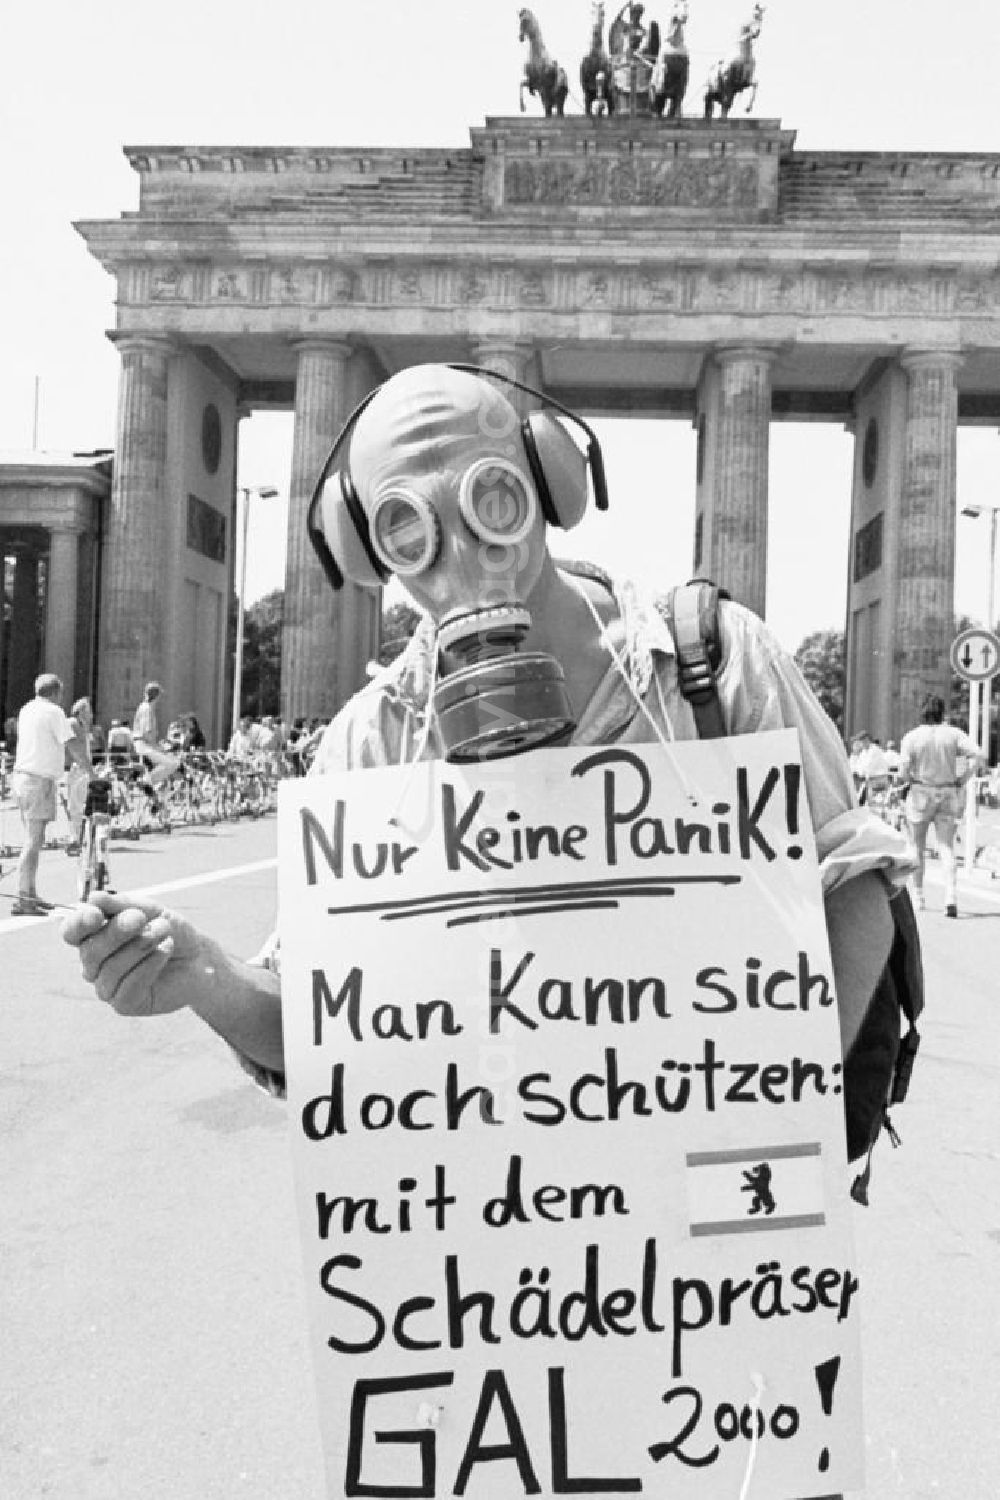 GDR photo archive: Berlin-Mitte - Partei Bündnis die 9